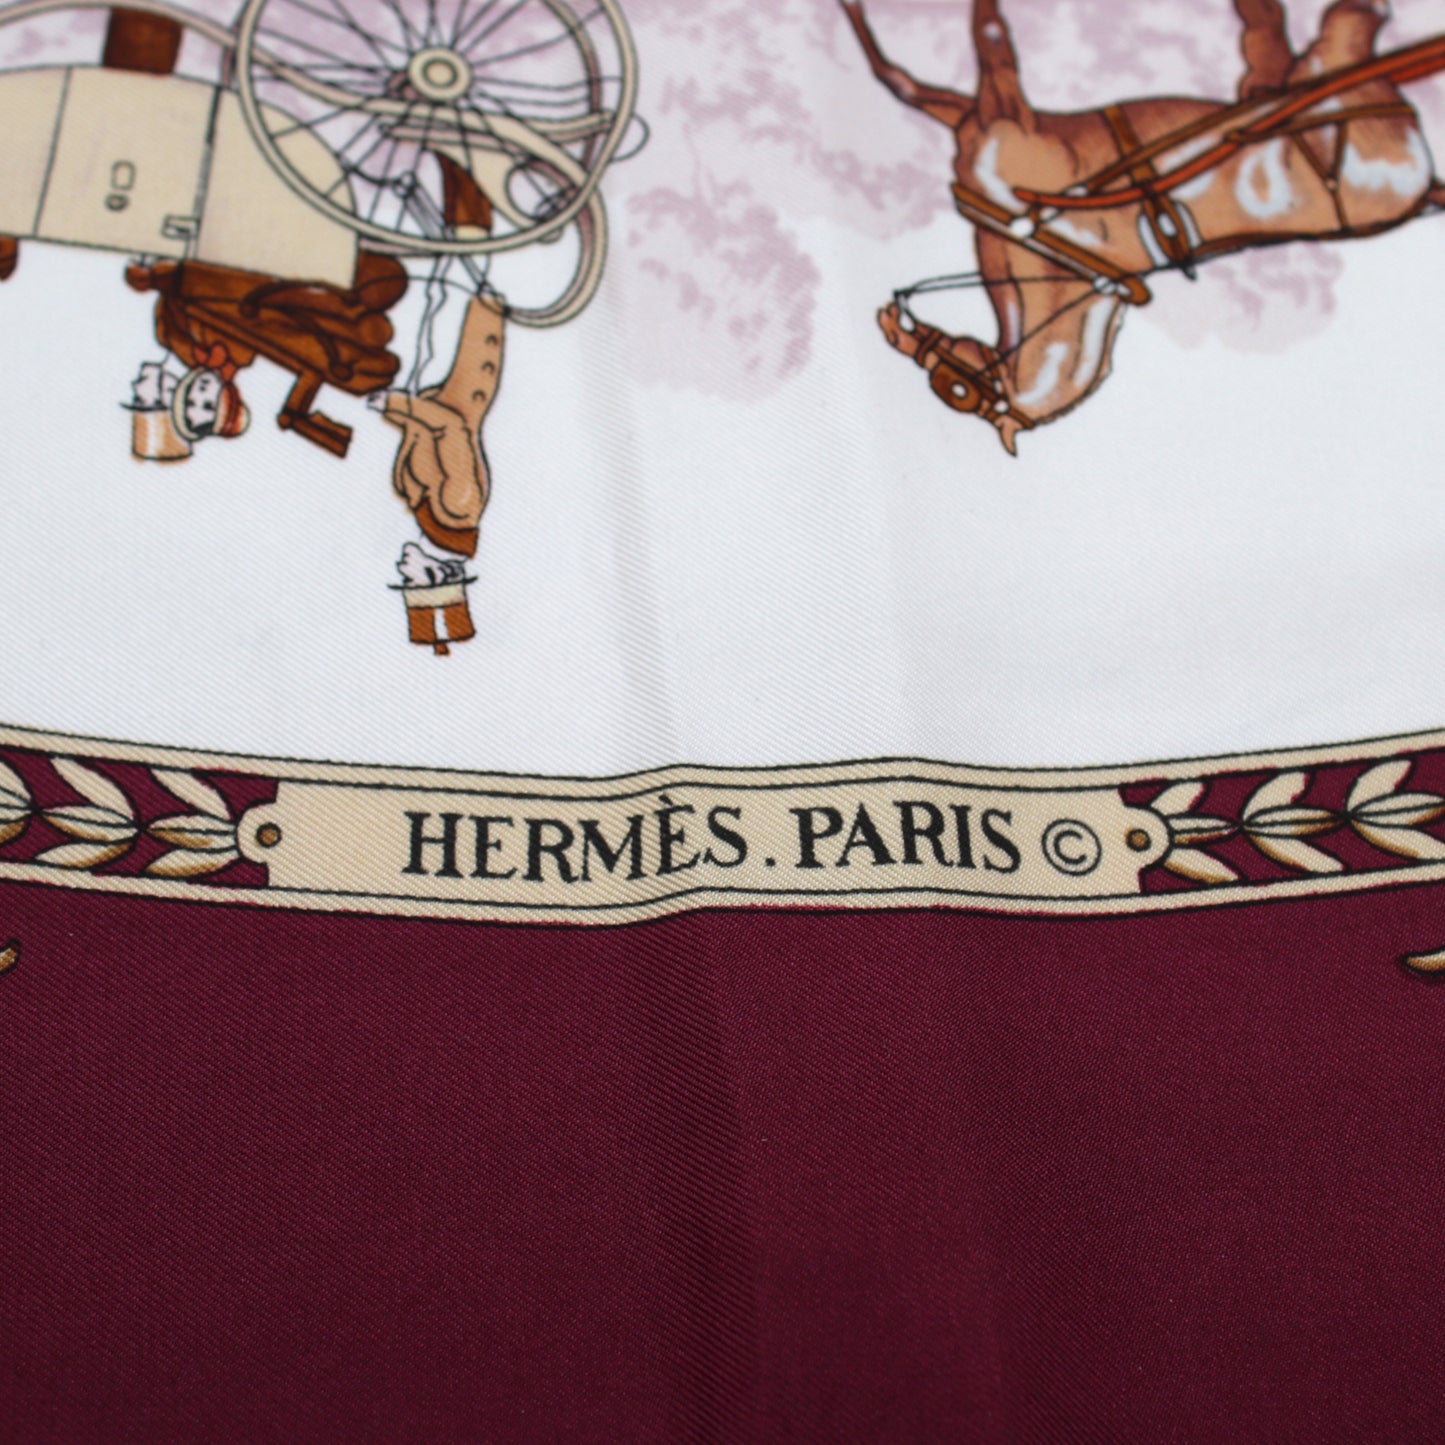 Hermès Carré La promenade de Longchamps